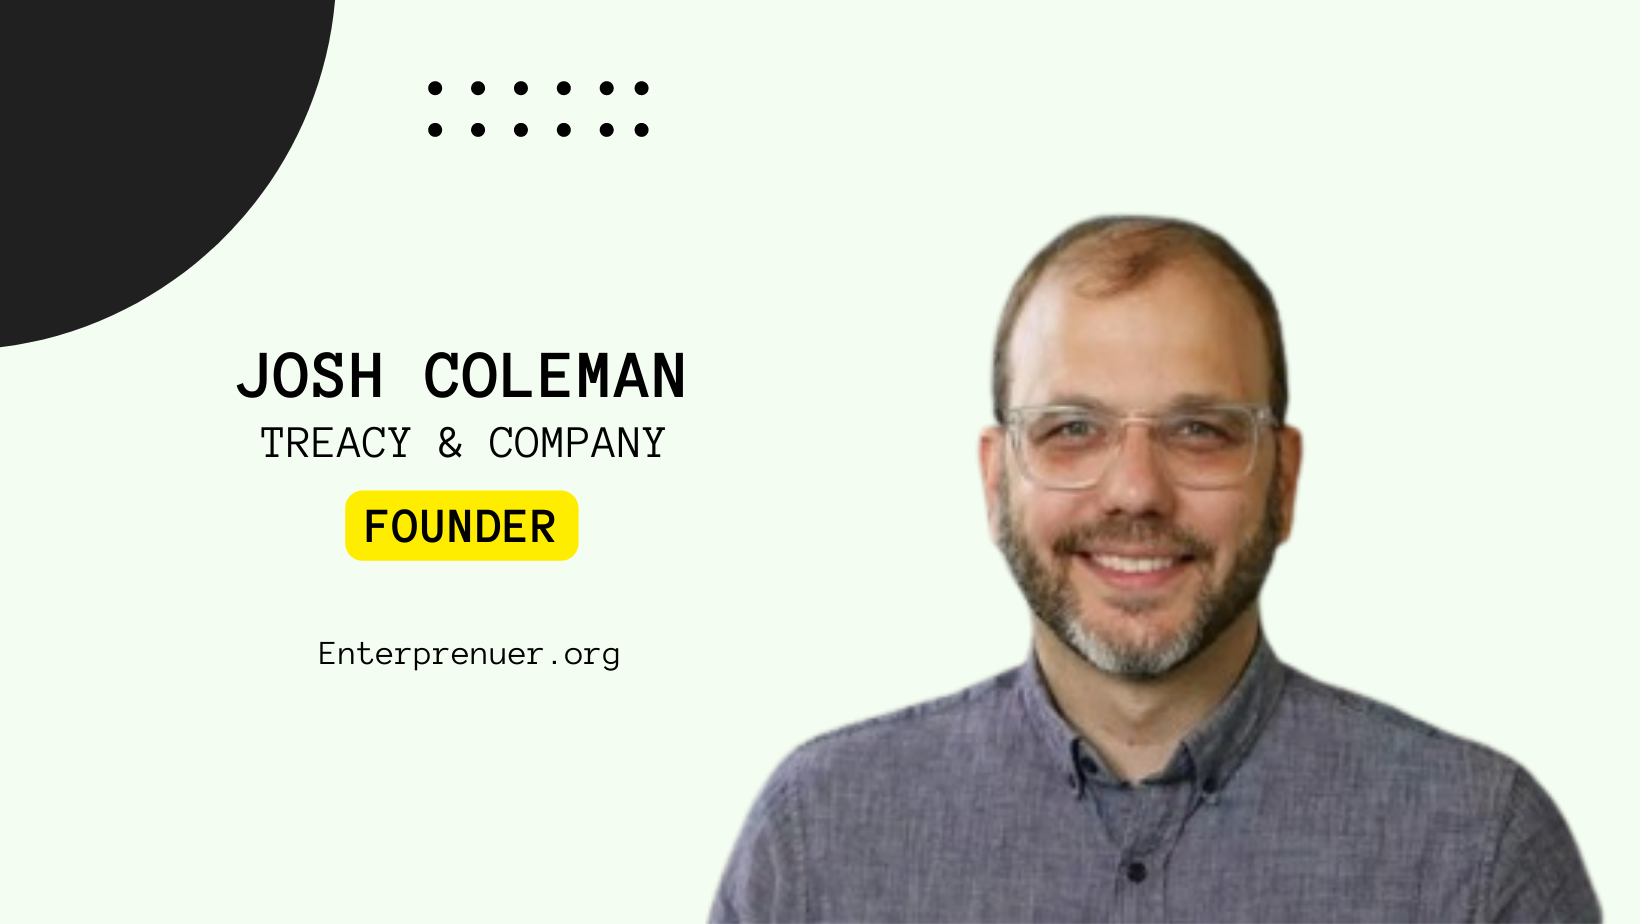 Meet Josh Coleman Partner at Treacy & Company